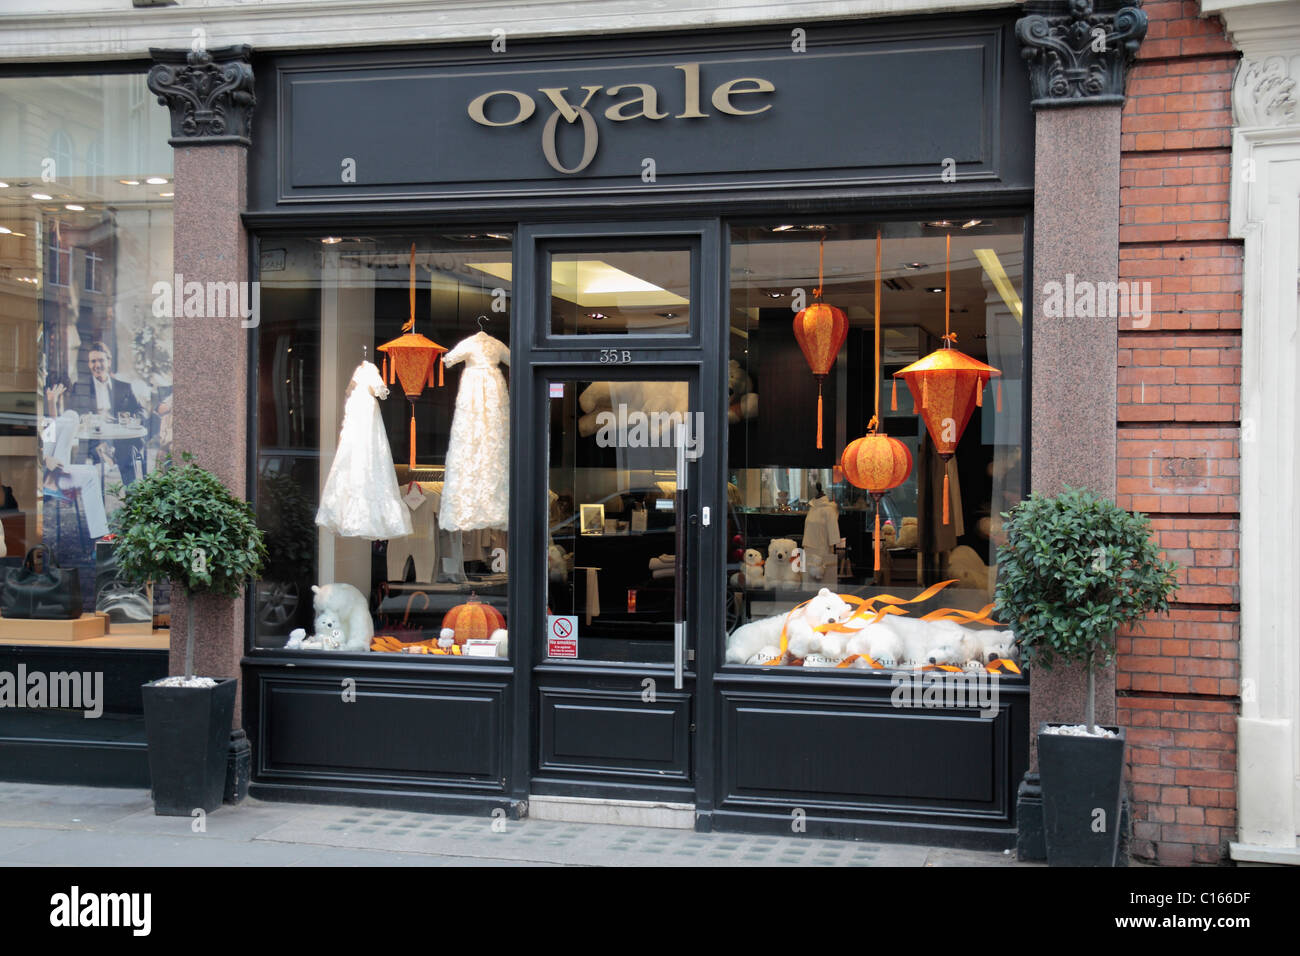 Die Ovale Kinder Bekleidung und Mode Shop auf Sloane Street, London, SW1, England. Stockfoto